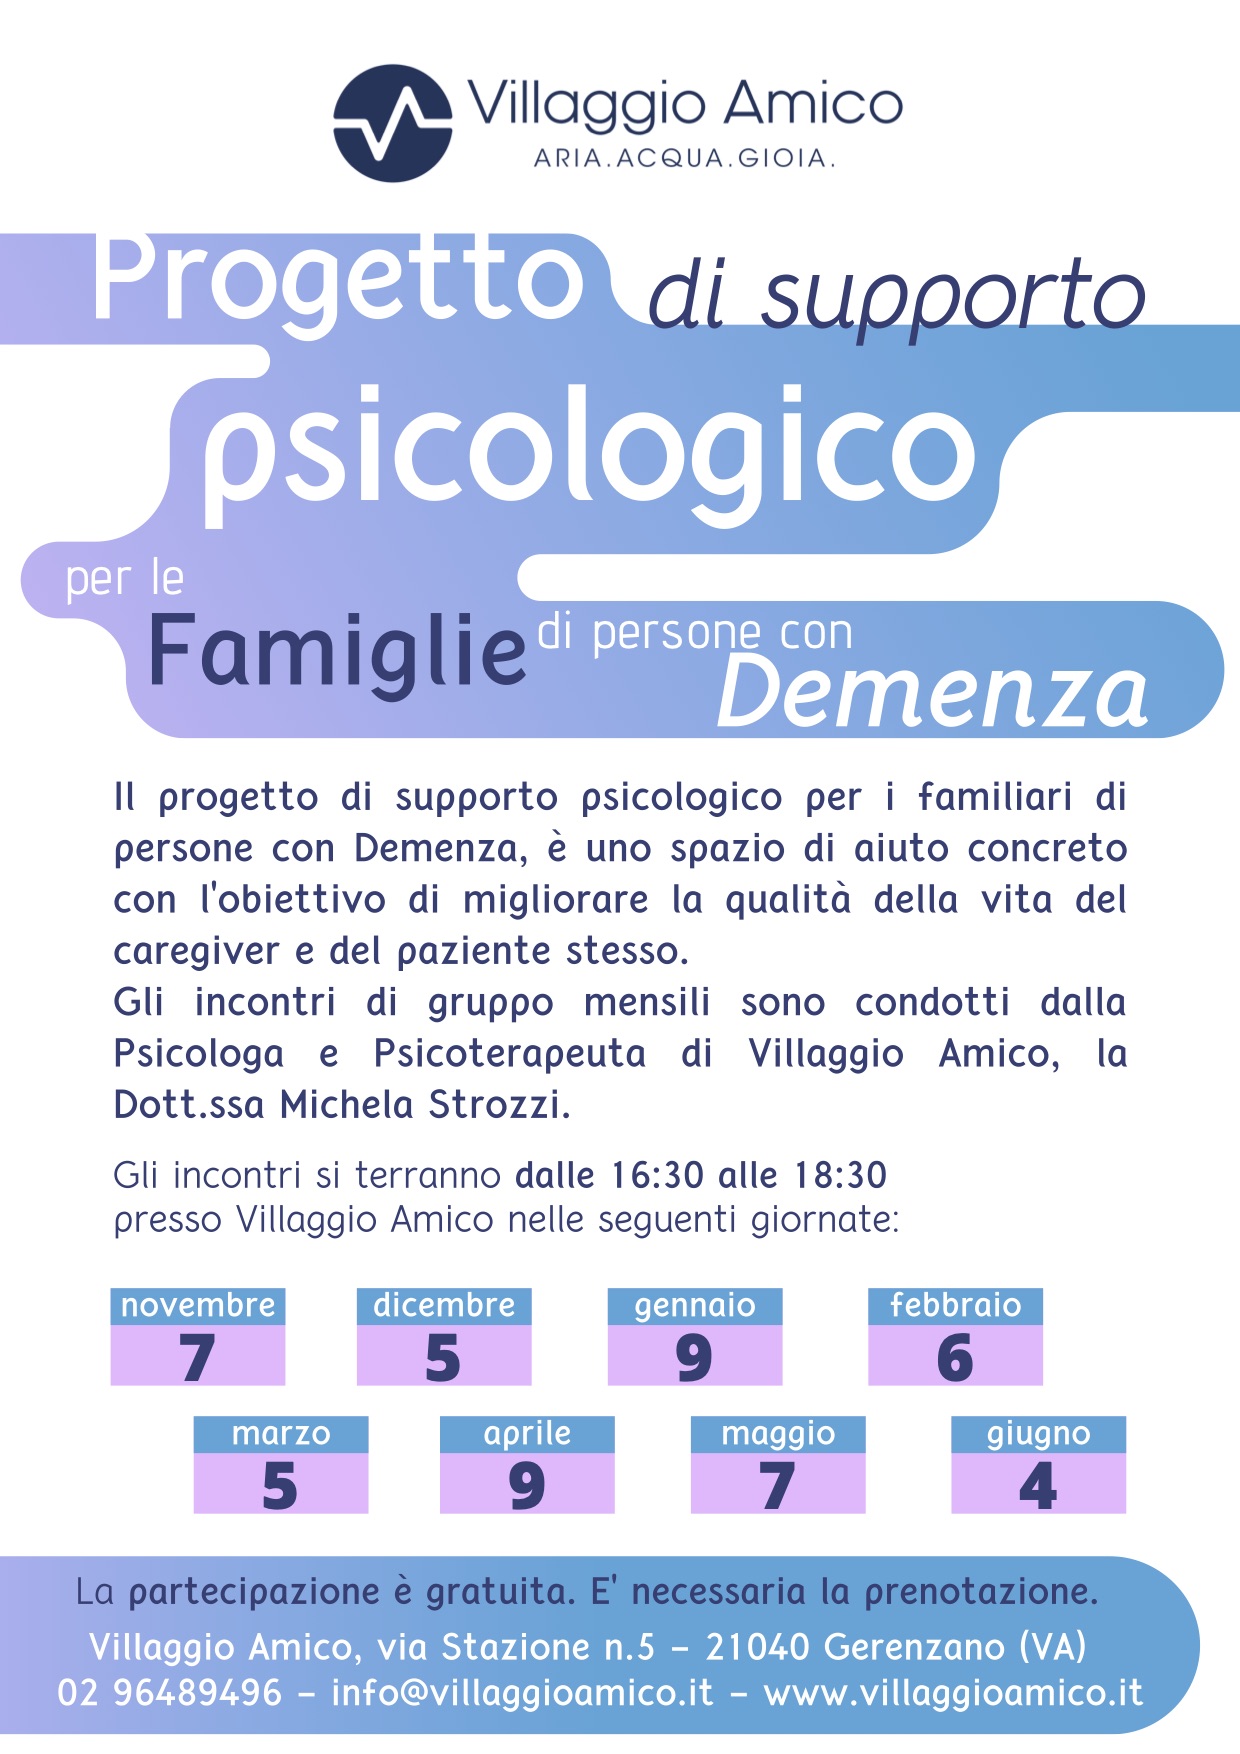 Caregiver e supporto psicologico: continuano gli appuntamenti a Villaggio Amico